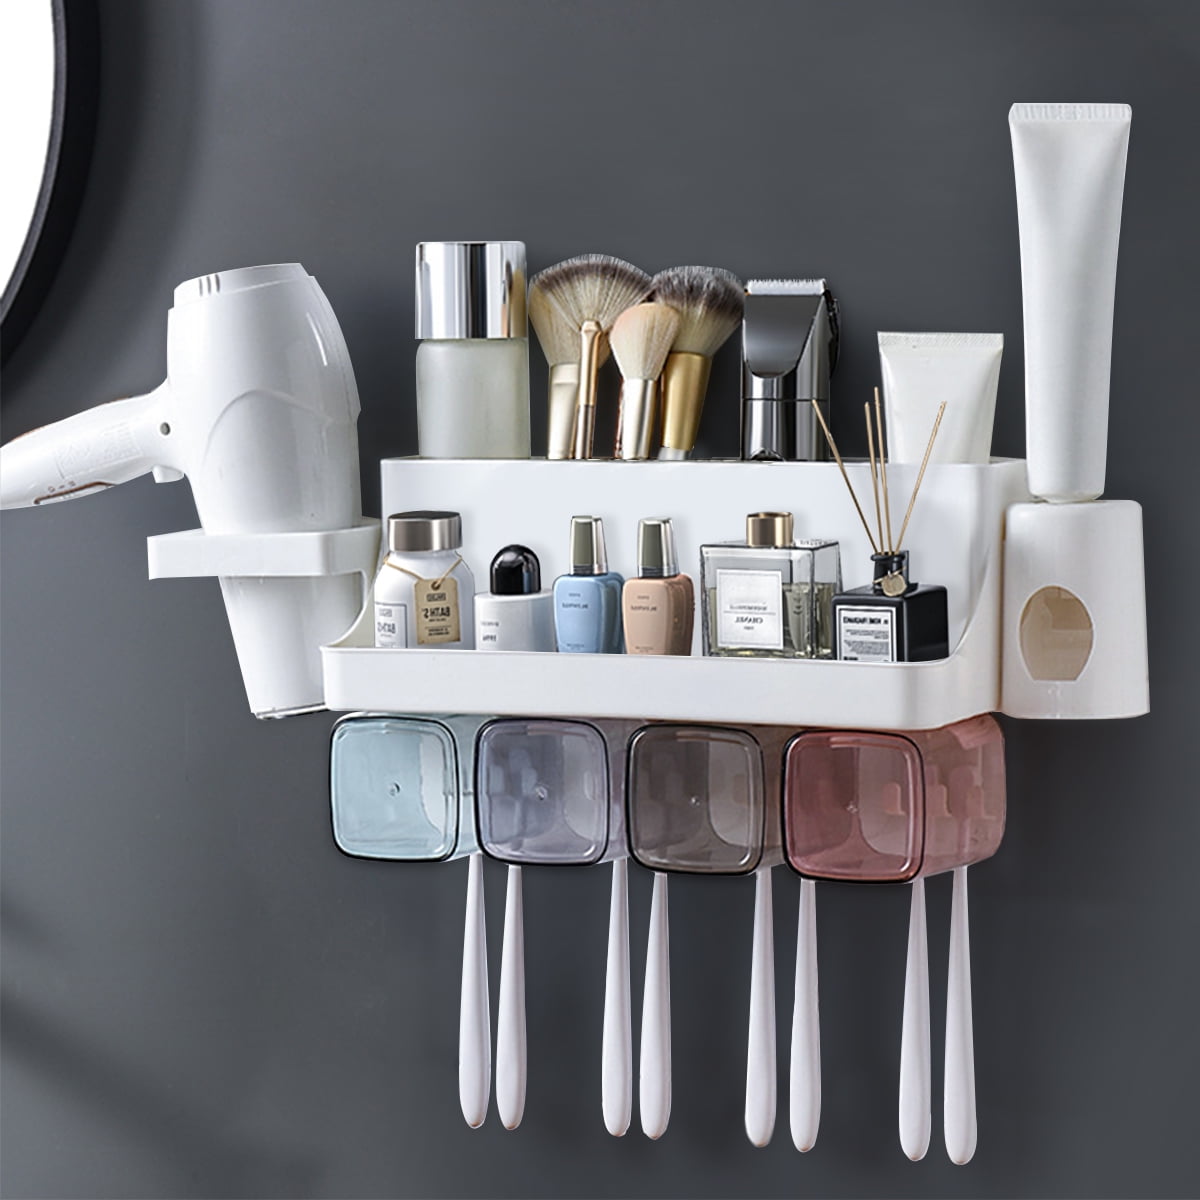 Toothbrush Toothpaste Tumbler Holder Bathroom Accessory Shelf Rack Organiser 